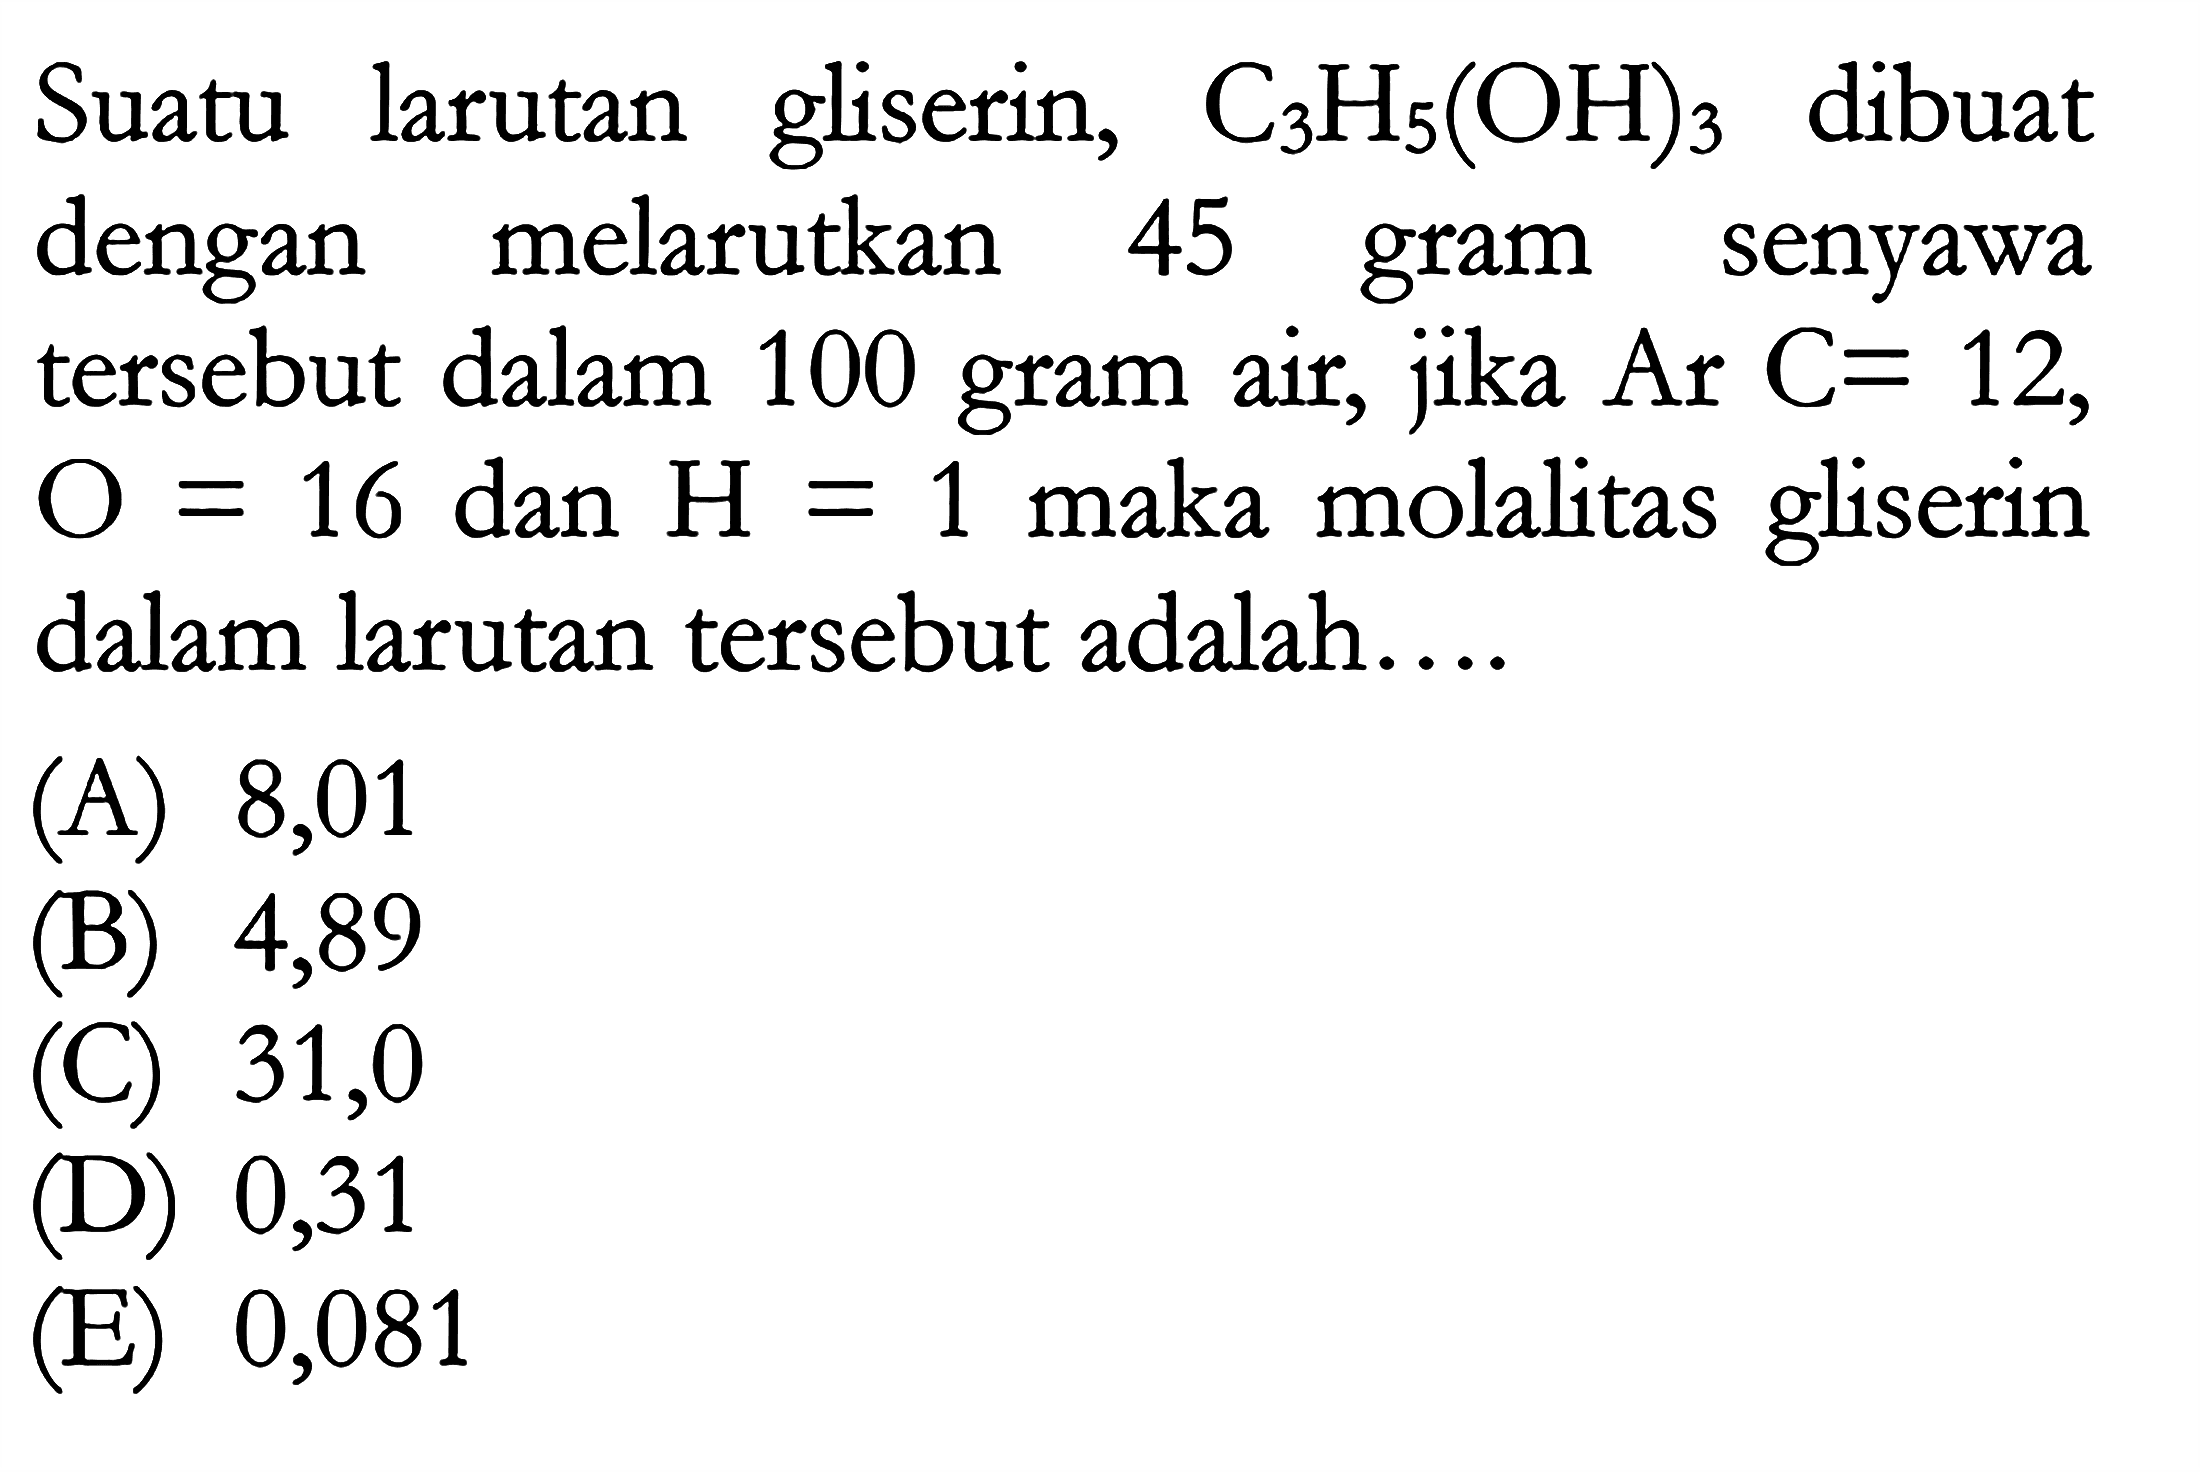 Suatu larutan gliserin, C3H5(OH)3 dibuat dengan melarutkan 45 gram senyawa tersebut dalam 100 gram air, jika Ar C = 12, O = 16 dan H = 1 maka molalitas gliserin dalam larutan tersebut adalah ...